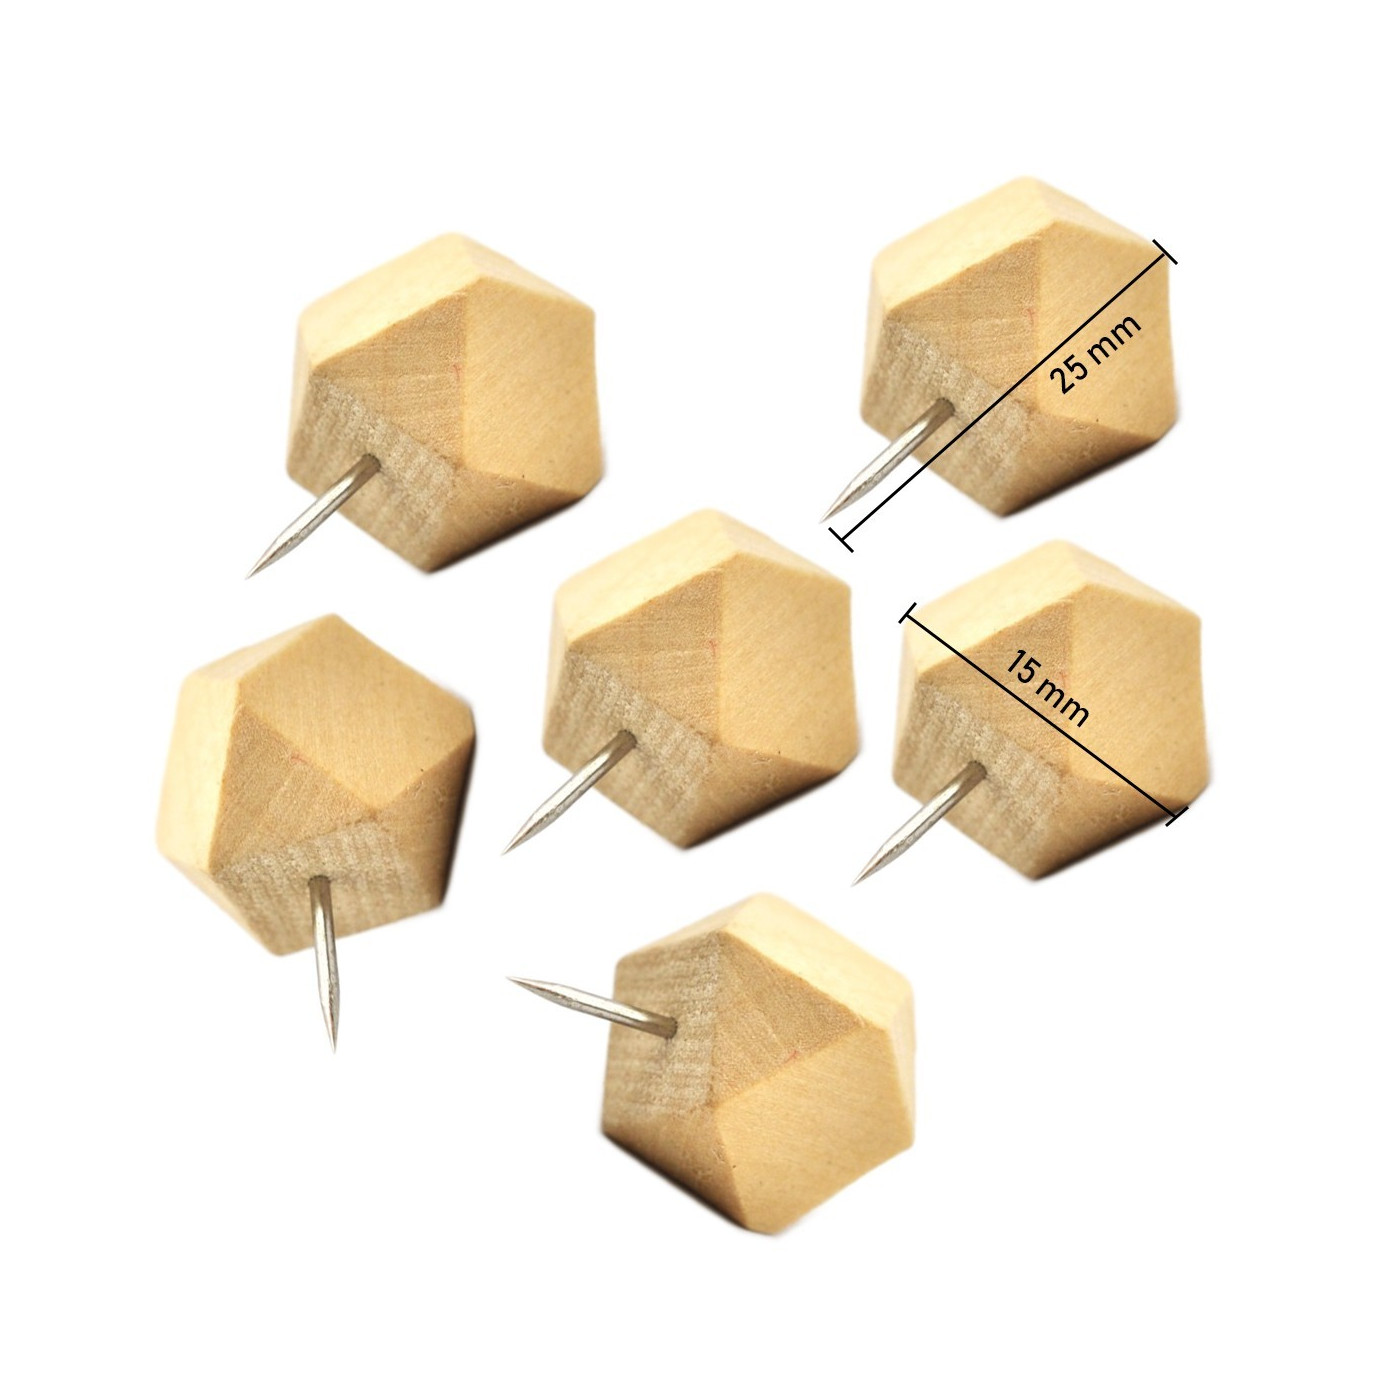 Sada 28 dřevěných připínáčků, polygonů, ve 2 krabicích